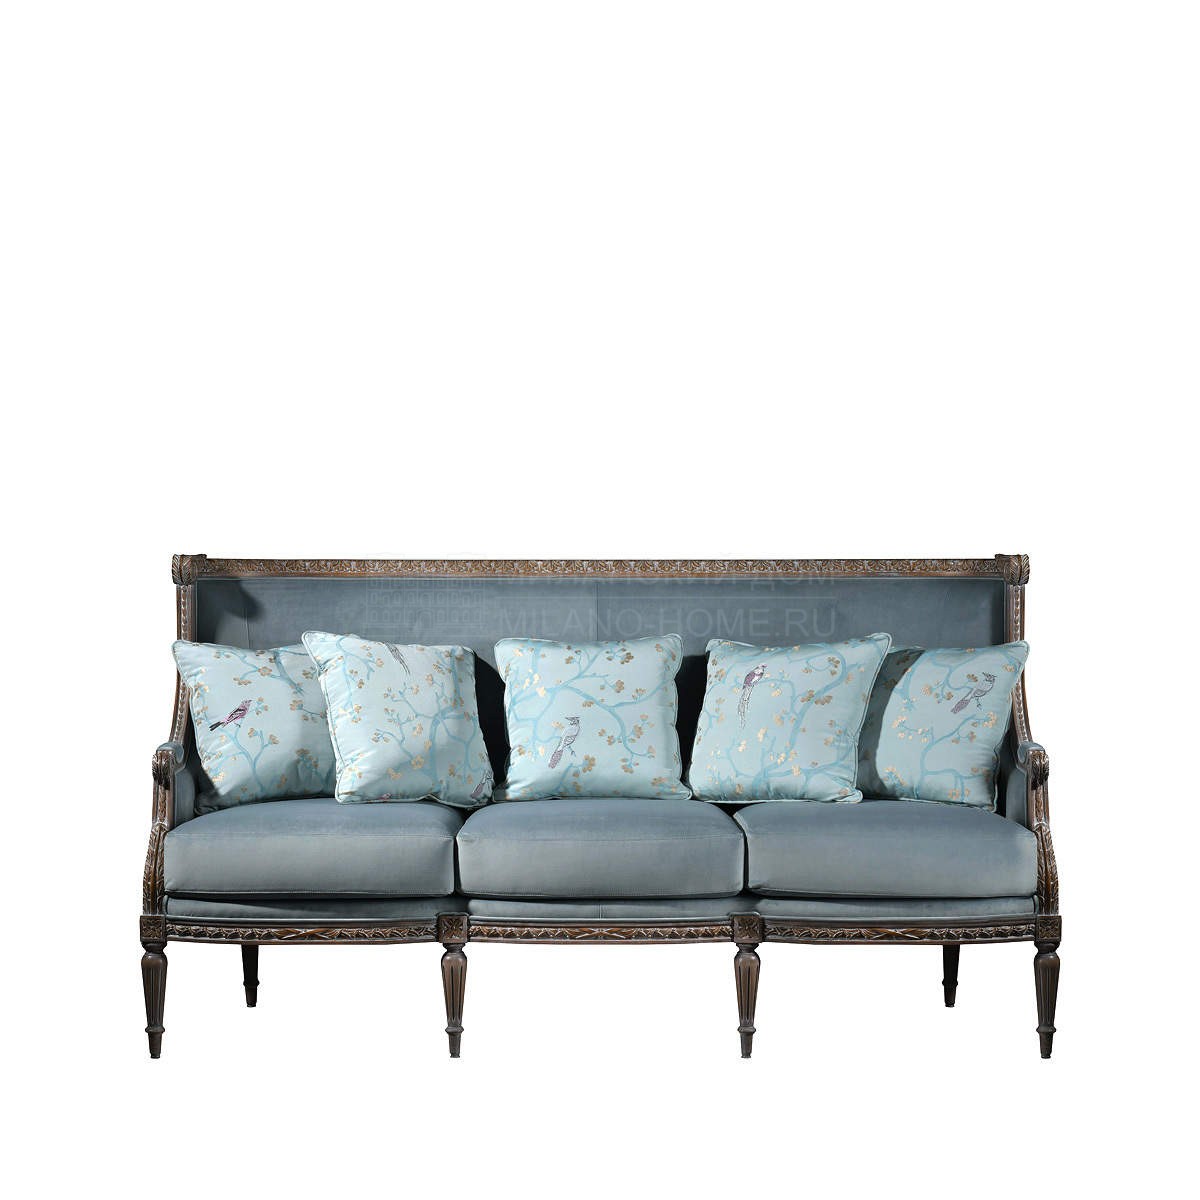 Прямой диван Susa sofa из Испании фабрики COLECCION ALEXANDRA